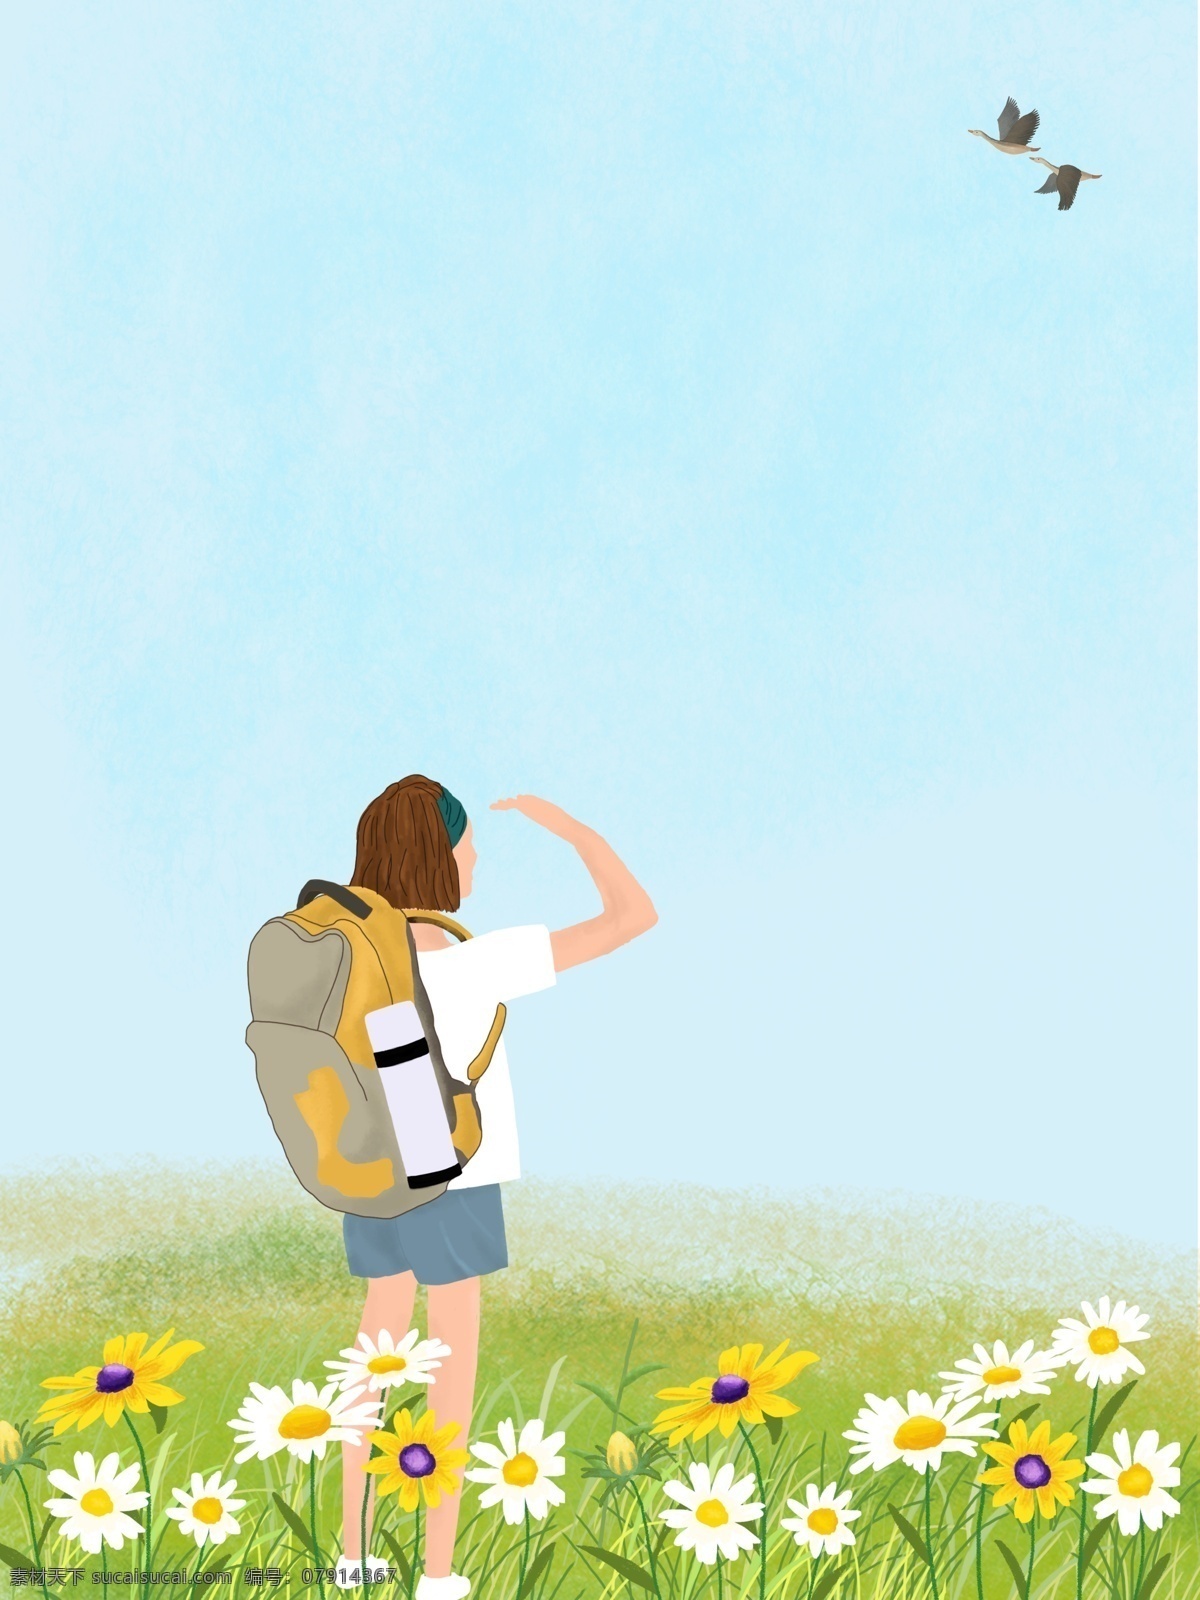 春季 徒步 旅行 女孩 背景 野花 黄花 大雁 手绘 草地